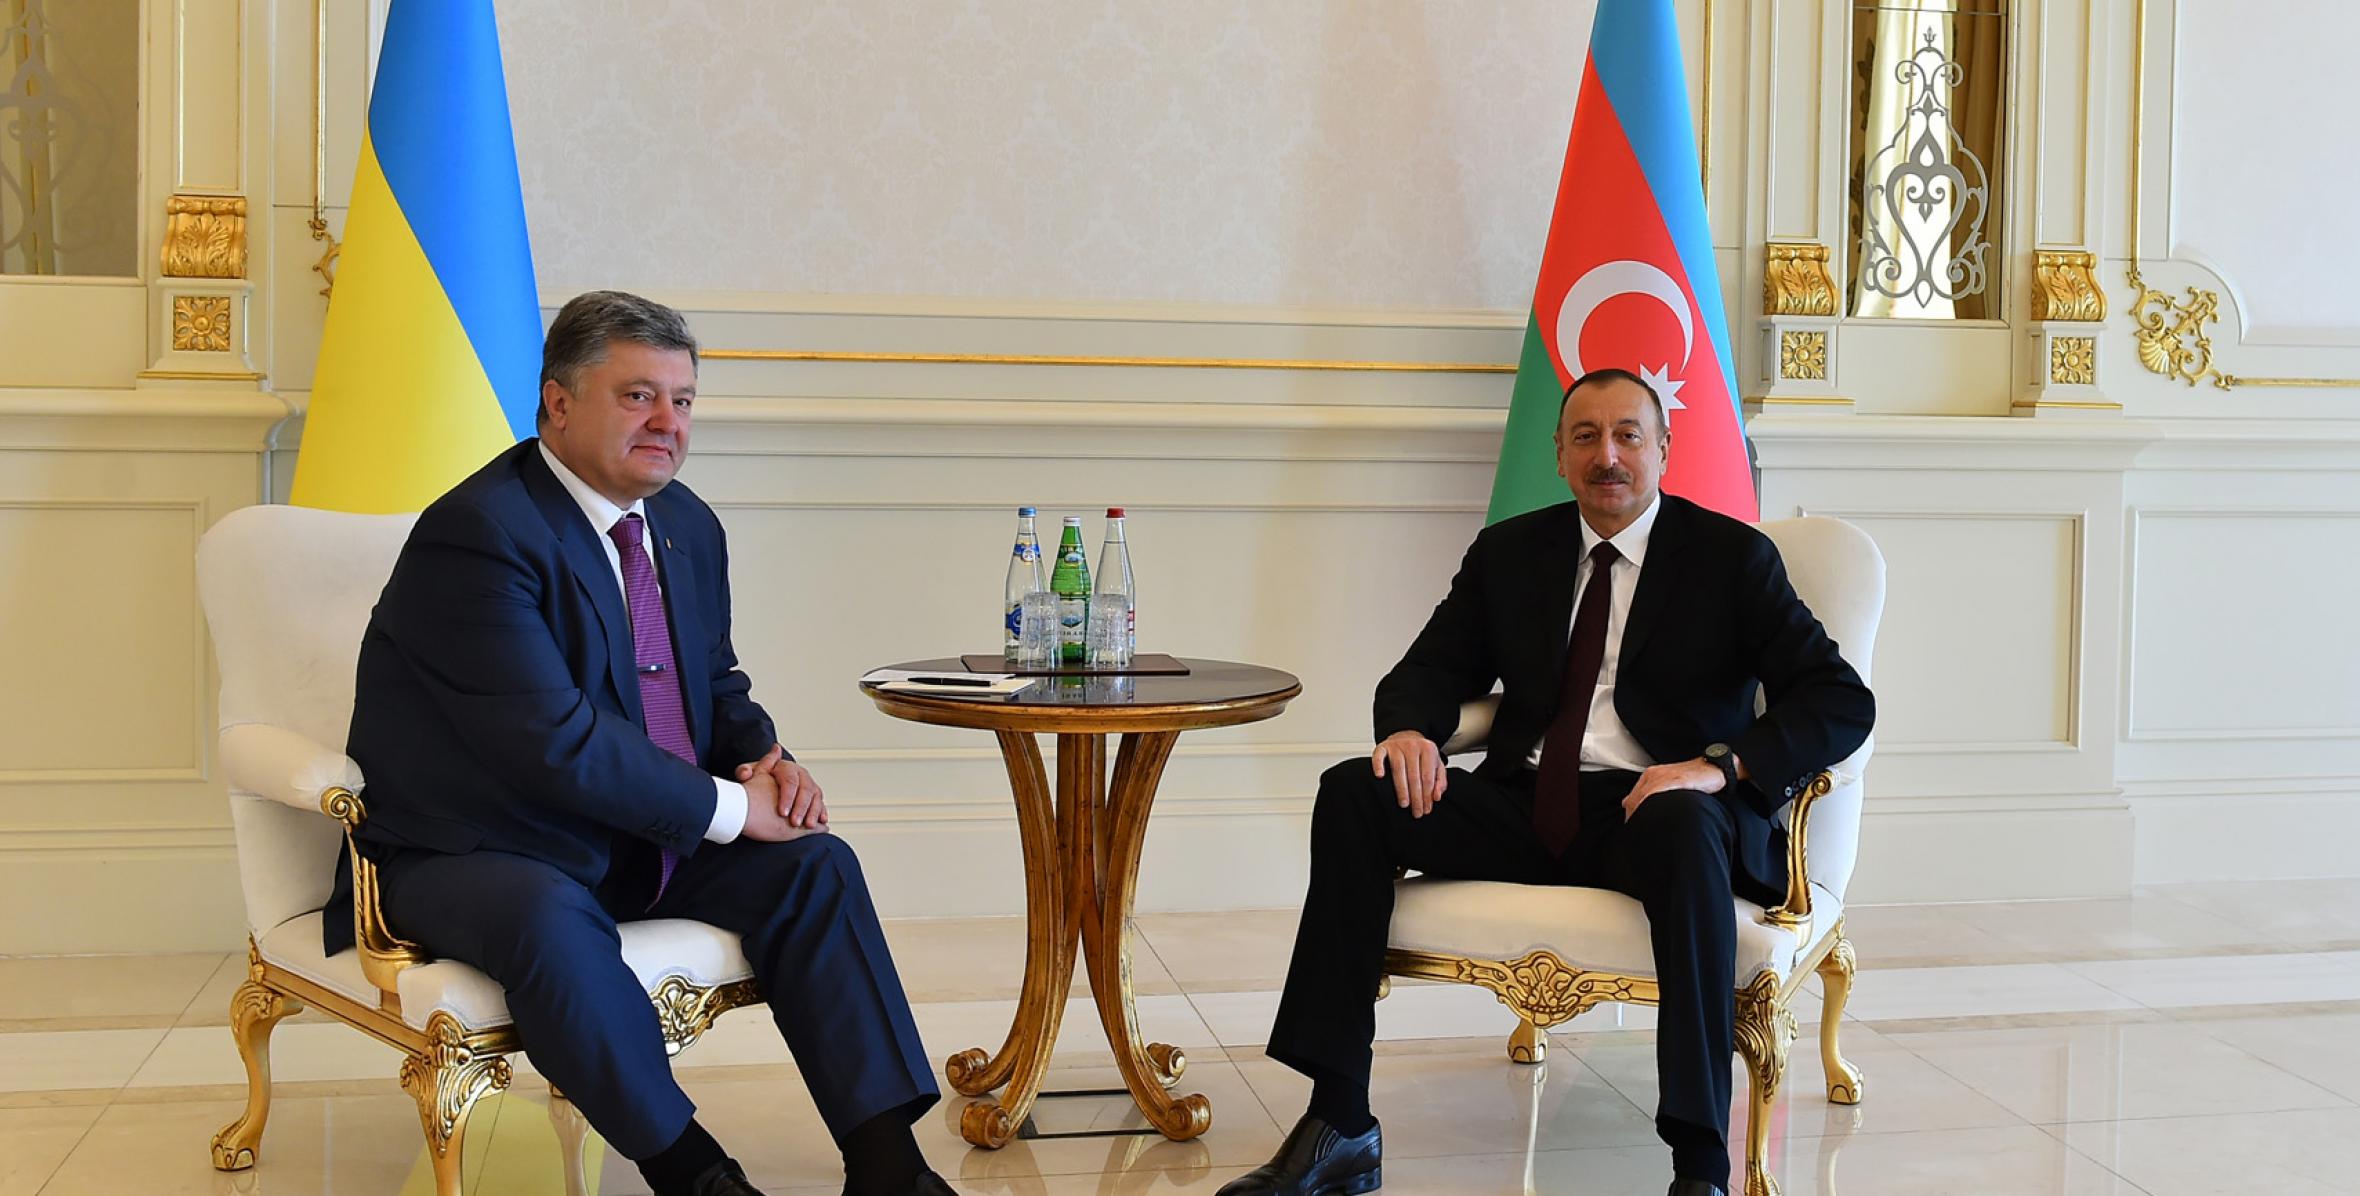 Ilham Aliyev and President Petro Poroshenko met in private